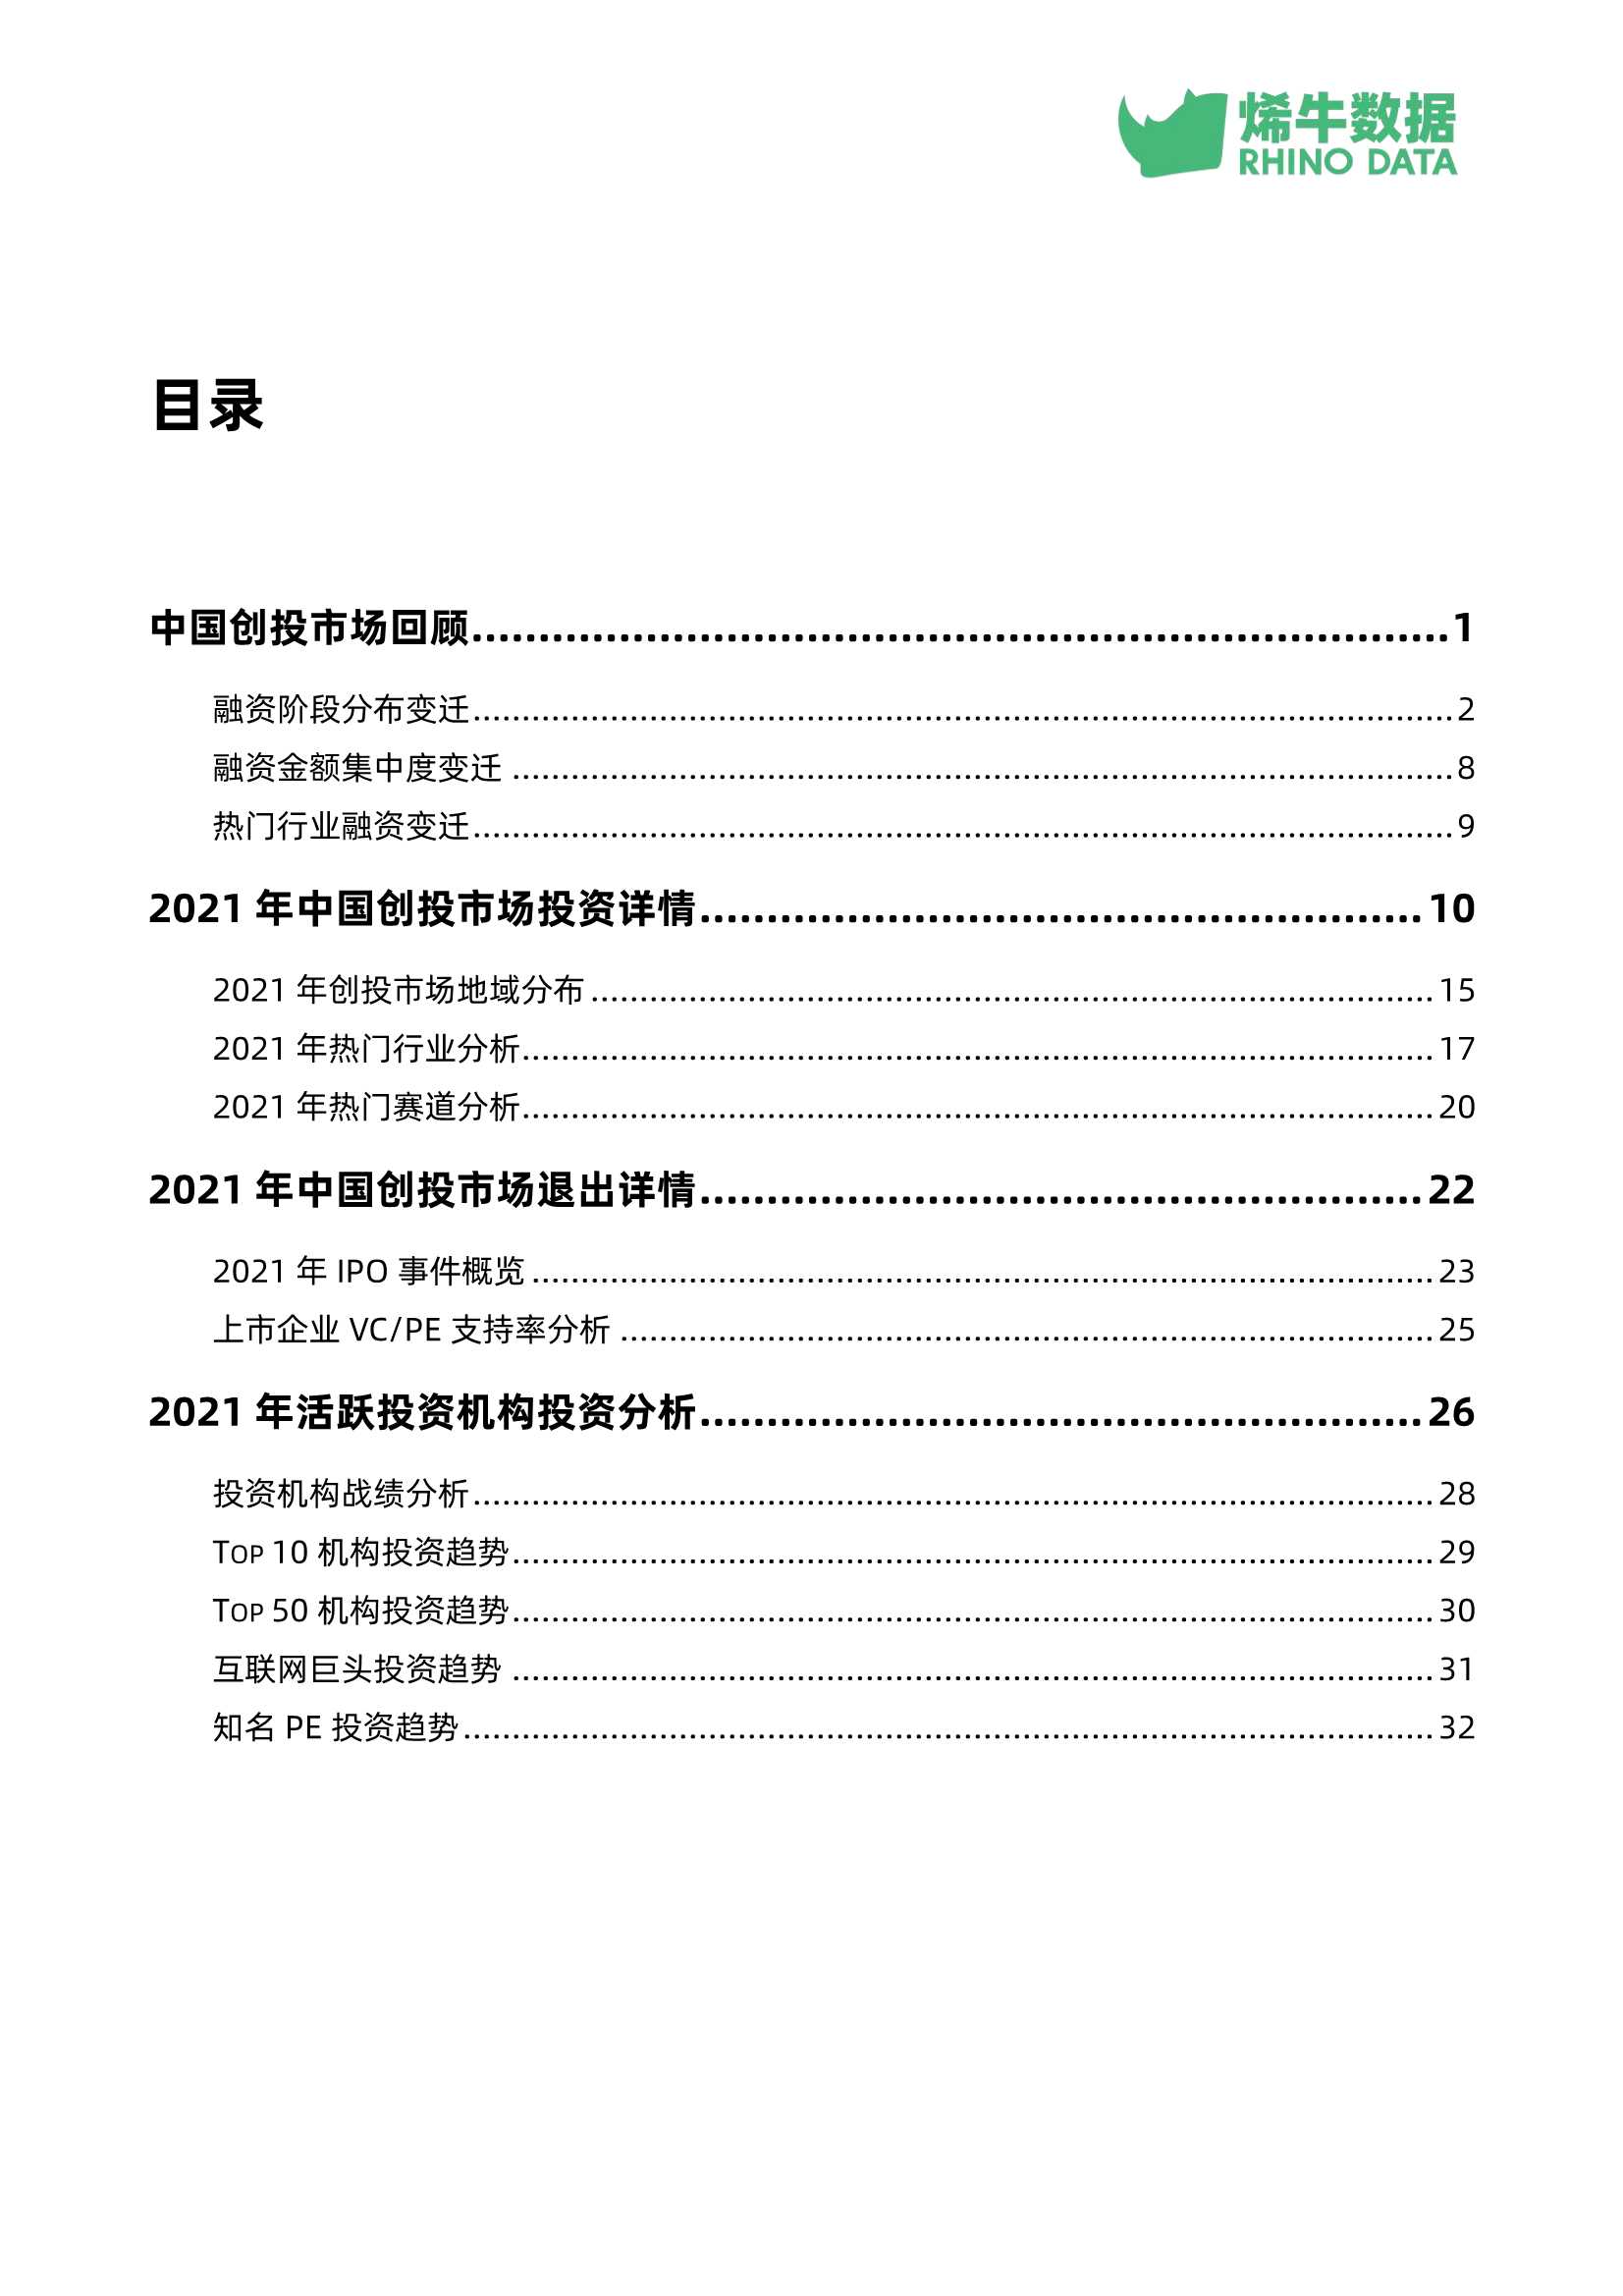 烯牛数据-2021年中国创投市场数据报告-2022.02-38页